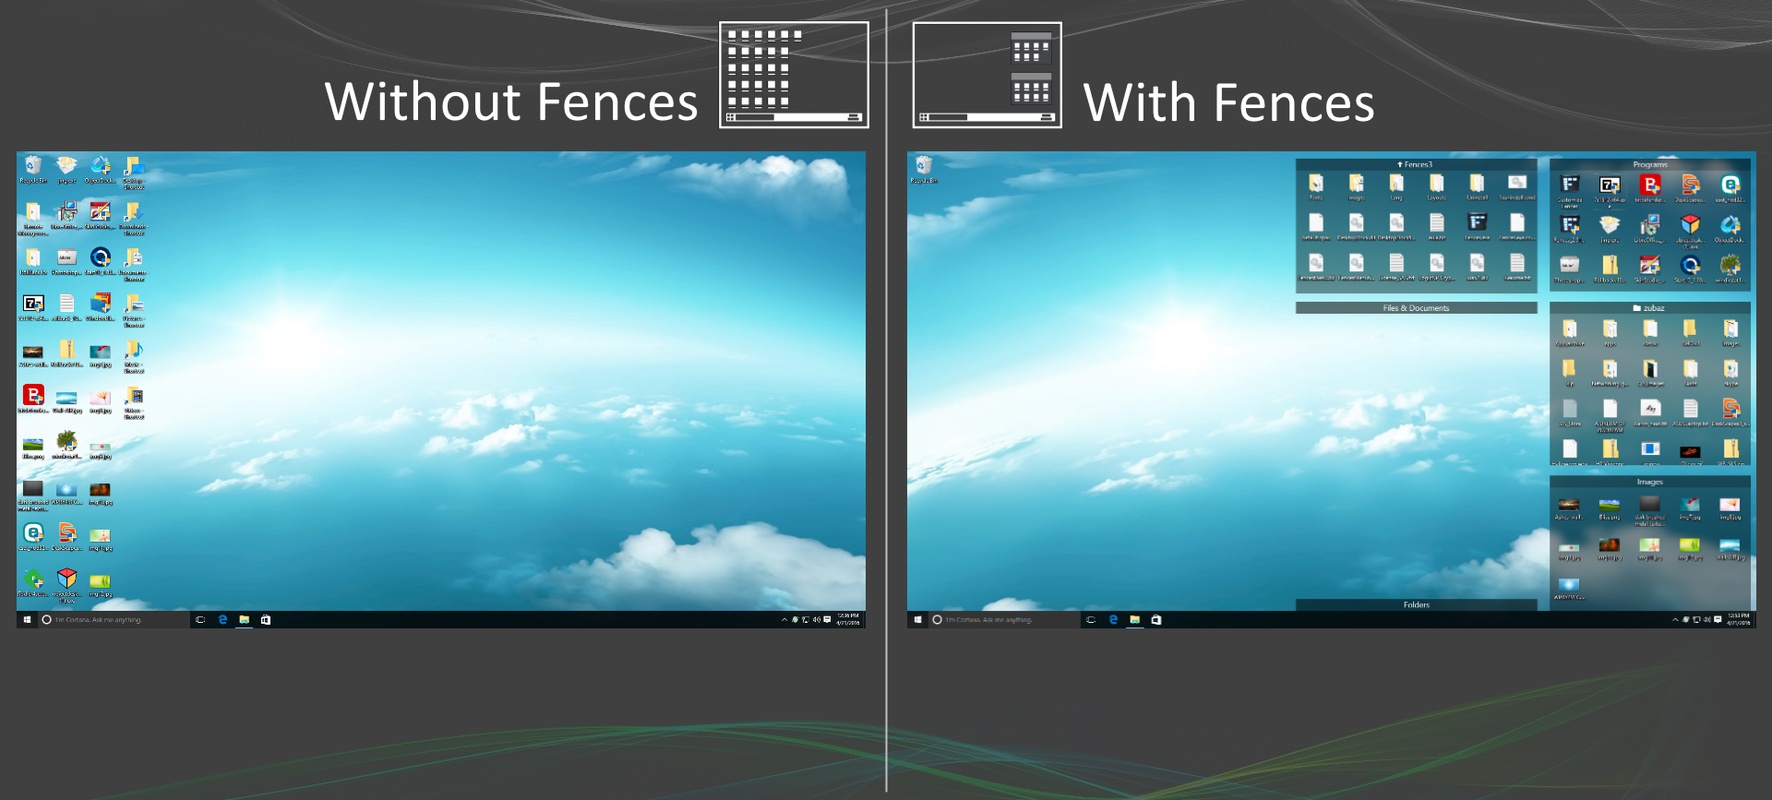 Fences 4.1.0.6 for Windows Screenshot 3